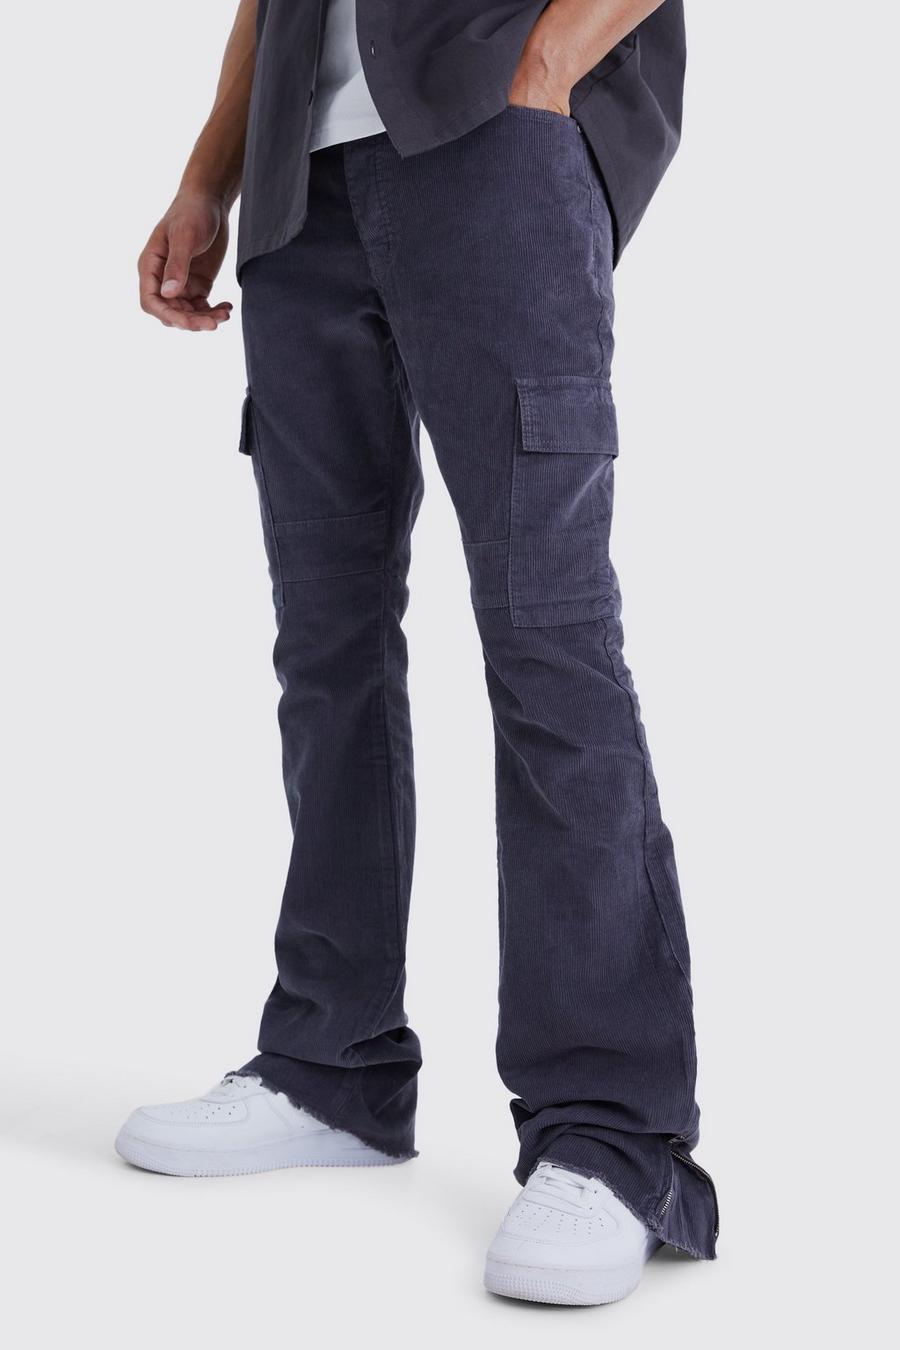 Pantaloni Cargo Tall a zampa Slim Fit in velluto a coste con inserti e zip, Charcoal